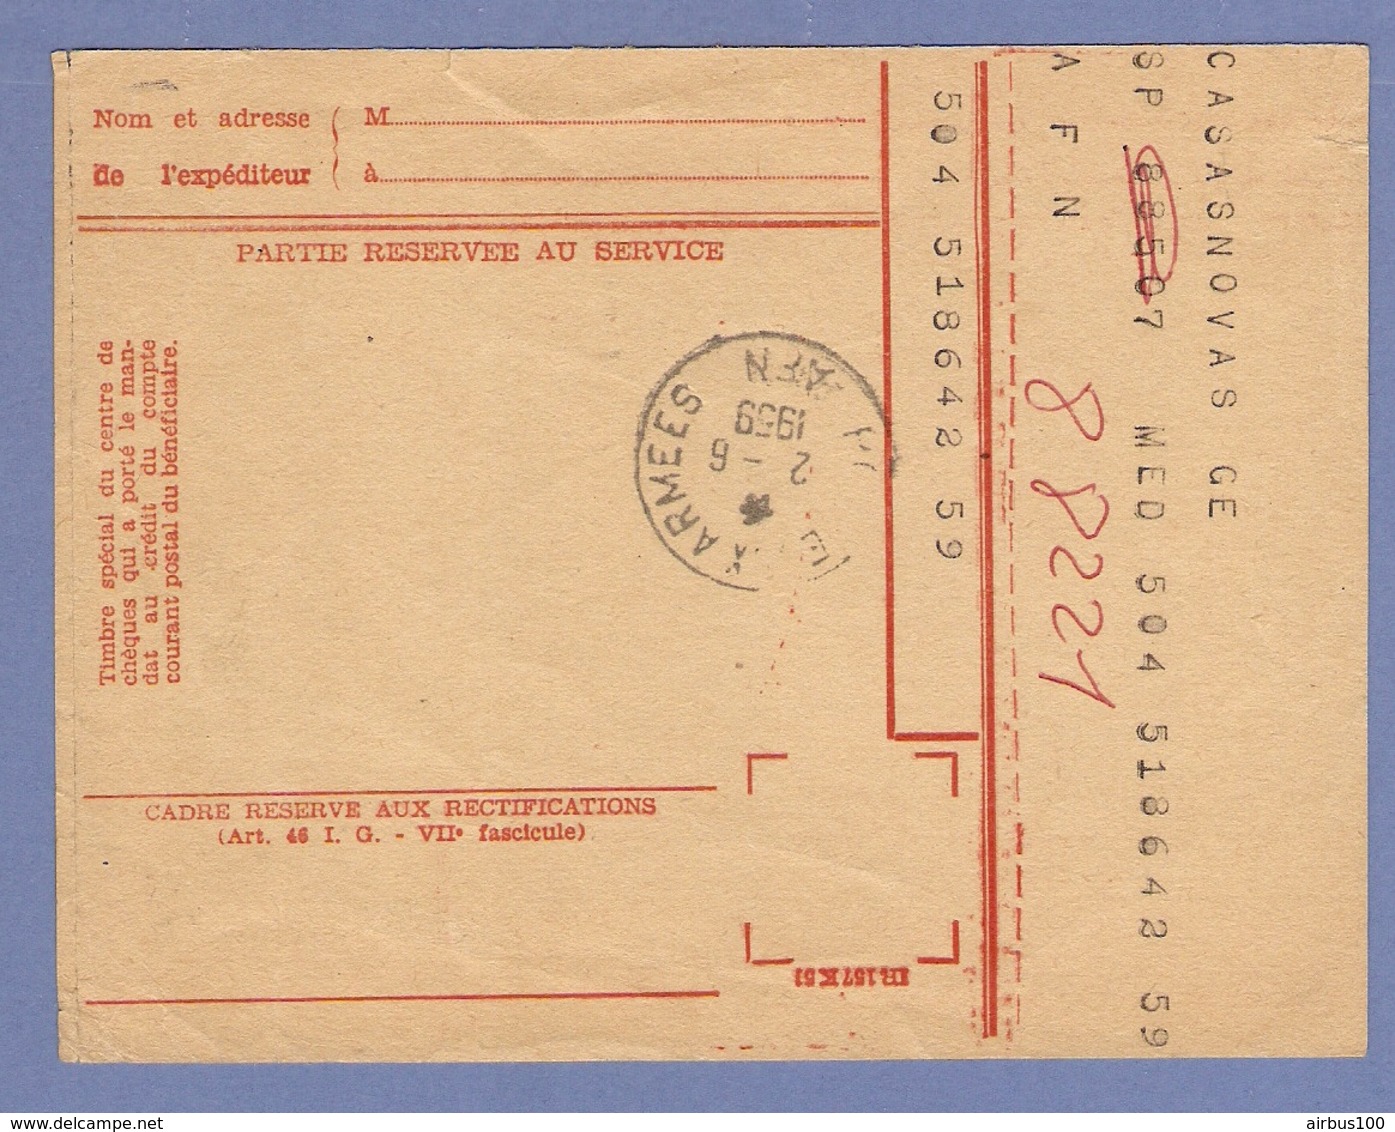 P.T.T. ALGÉRIE POSTE AUX ARMÉES 1959 MANDAT CARTE CHEQUES POSTAUX REDEVANCE RADIODIFFUSION TÉLÉVISION FRANCAISE - Documenten Van De Post